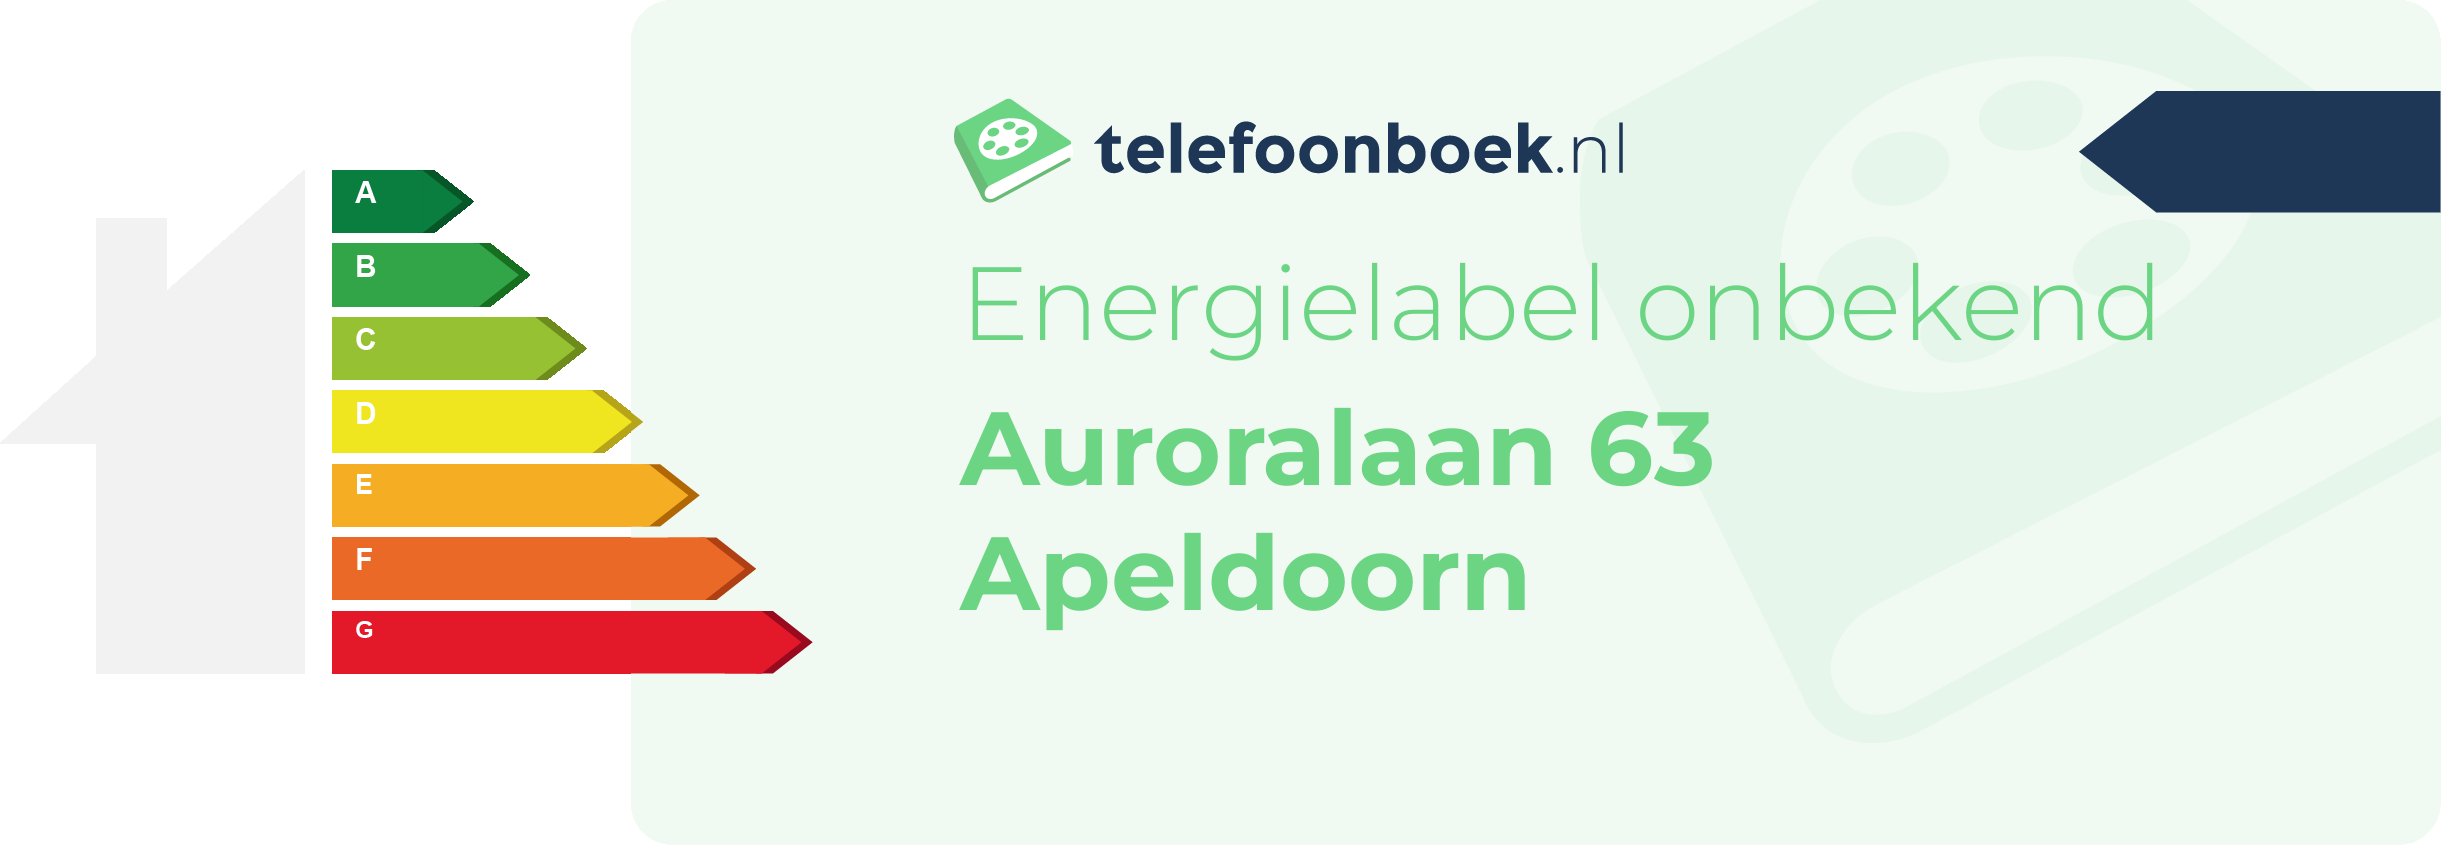 Energielabel Auroralaan 63 Apeldoorn